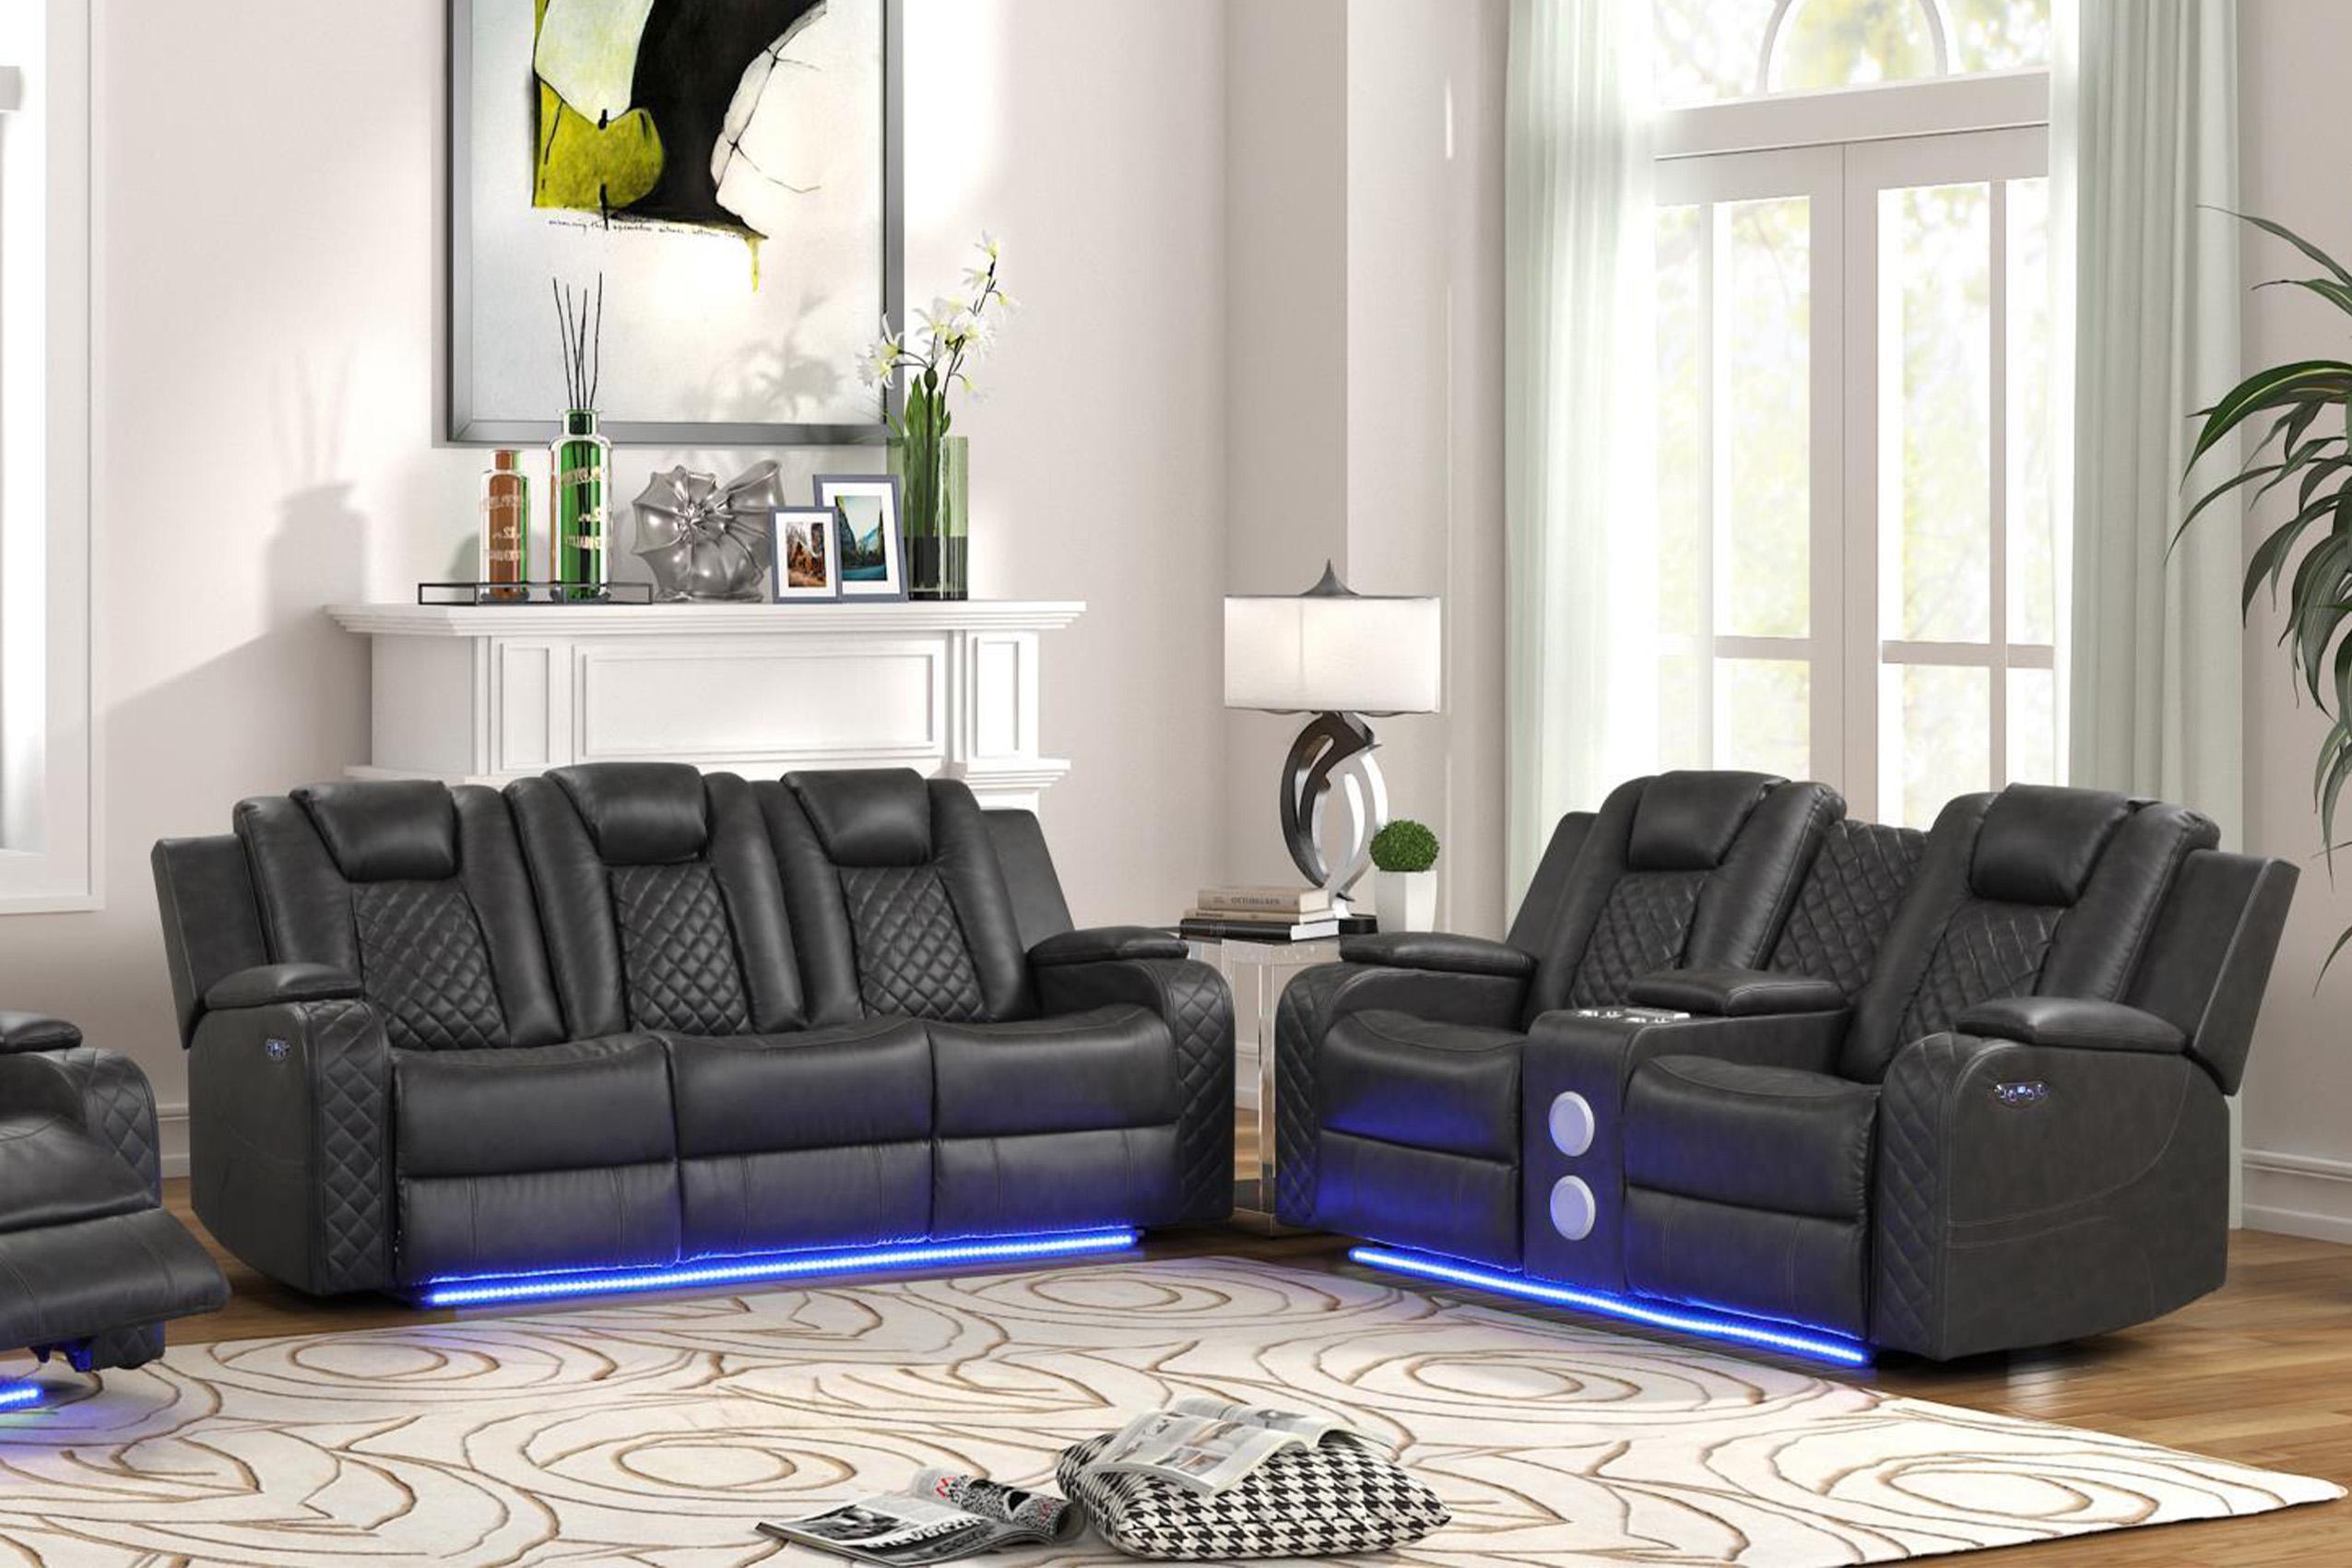 Galaxy Home Furniture BENZ Gray Recliner Sofa Set